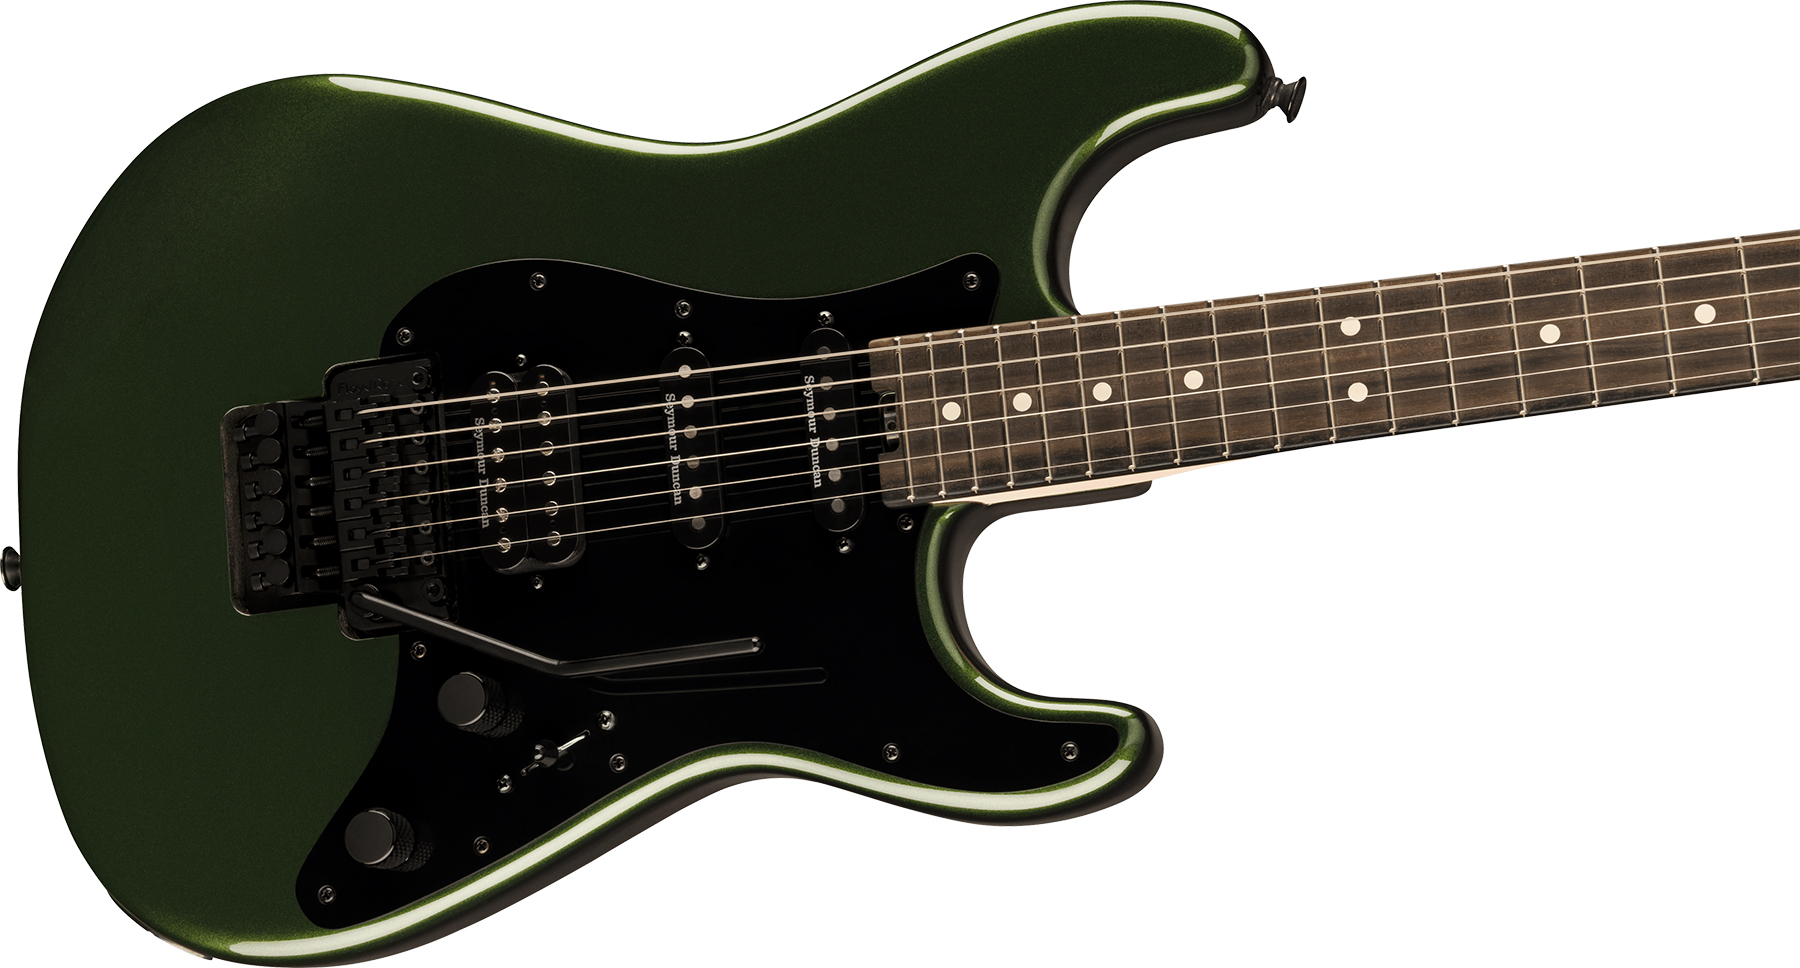 Charvel So-cal Style 1 Hss Fr E Pro-mod Seymour Duncan Eb - Lambo Green - Guitarra eléctrica con forma de str. - Variation 2